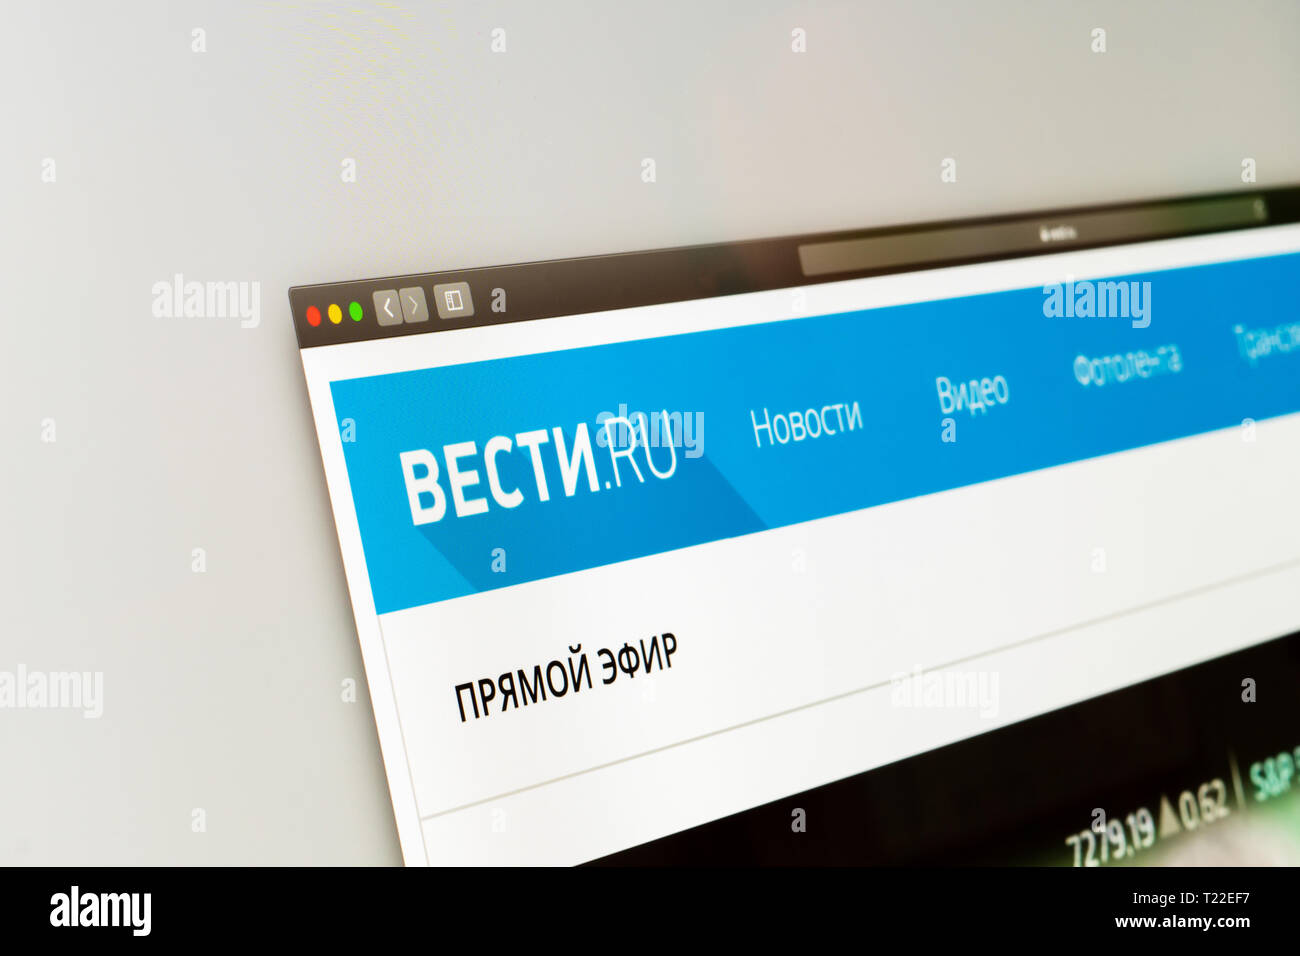 Vesti.ru Notizie website homepage. Close up Vesti.ru logo. Сan essere utilizzato come un esempio per altre notizie dei media o dei siti. Concetto di marketing Foto Stock